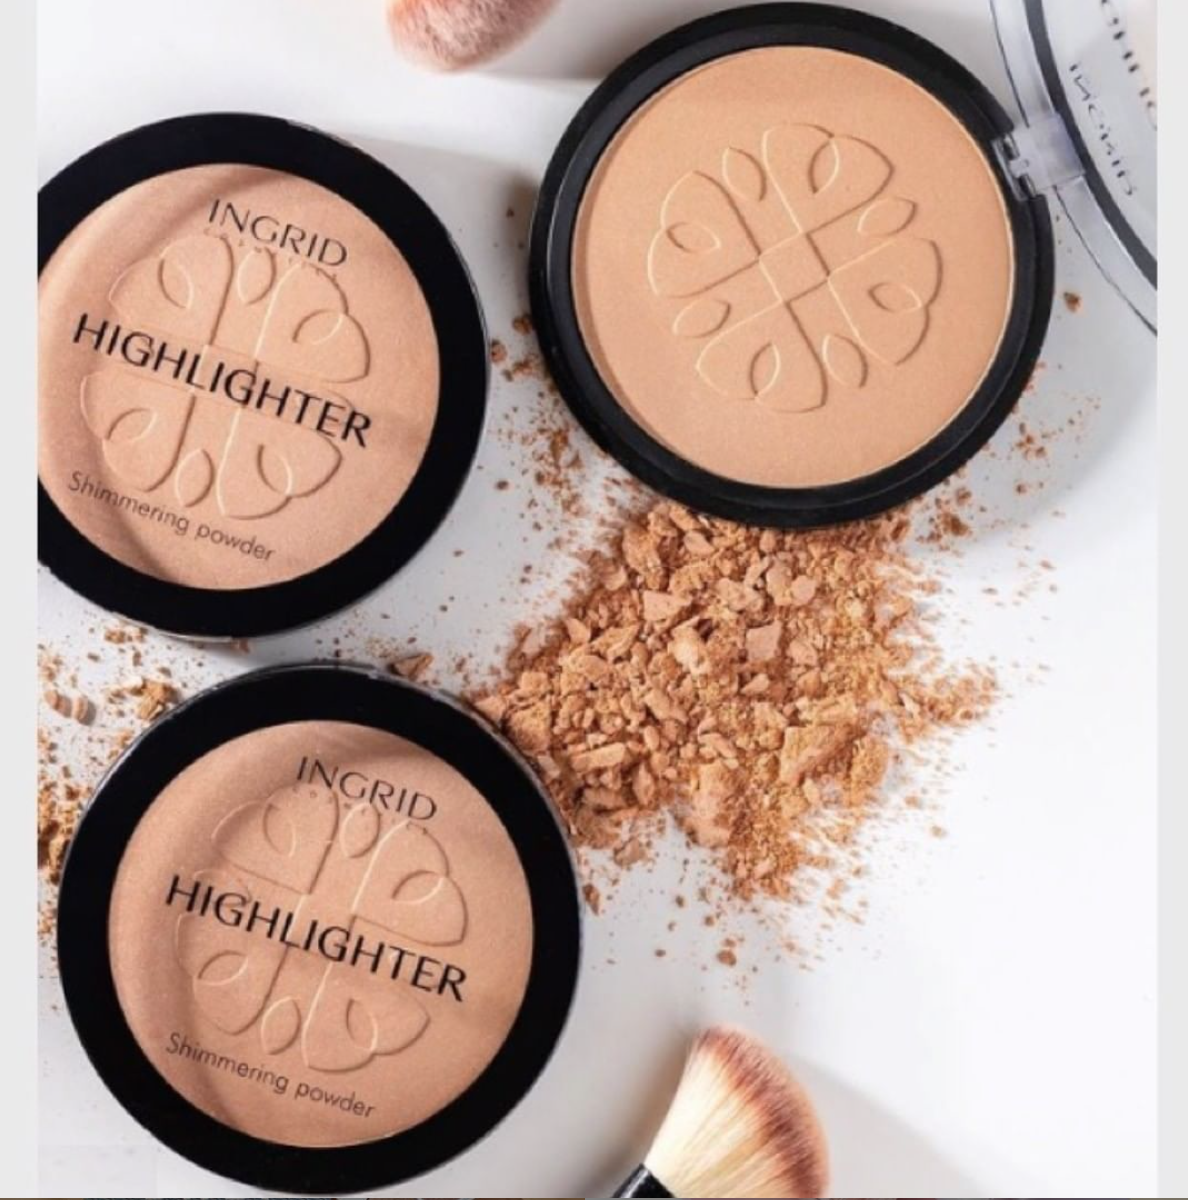 INGRID HD Beauty Innovation Shimmer Powder – EVERVA